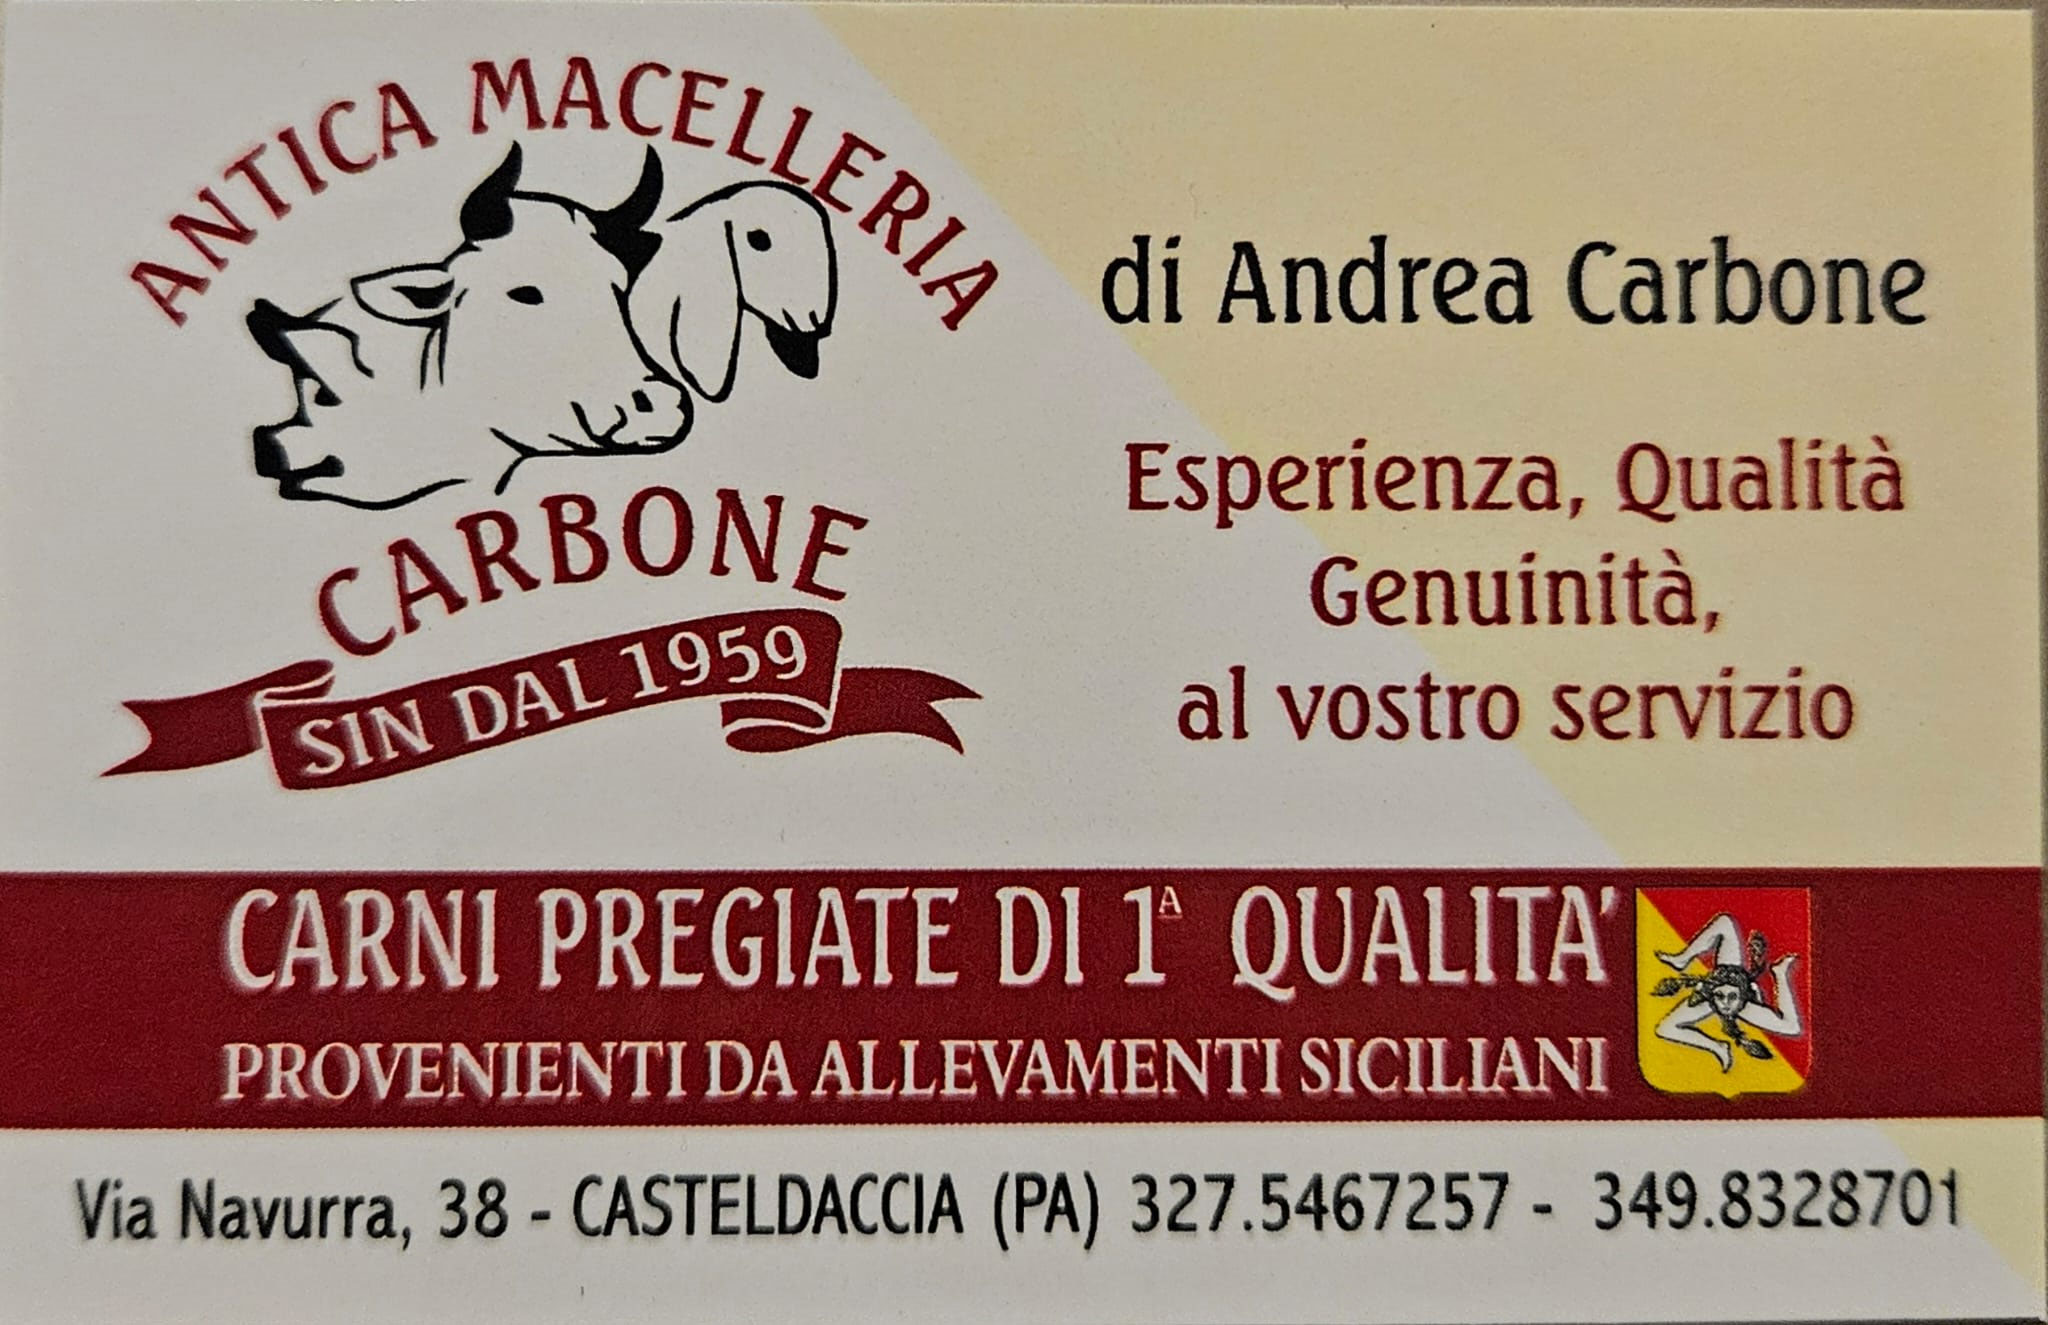 Antica Macelleria Carbone